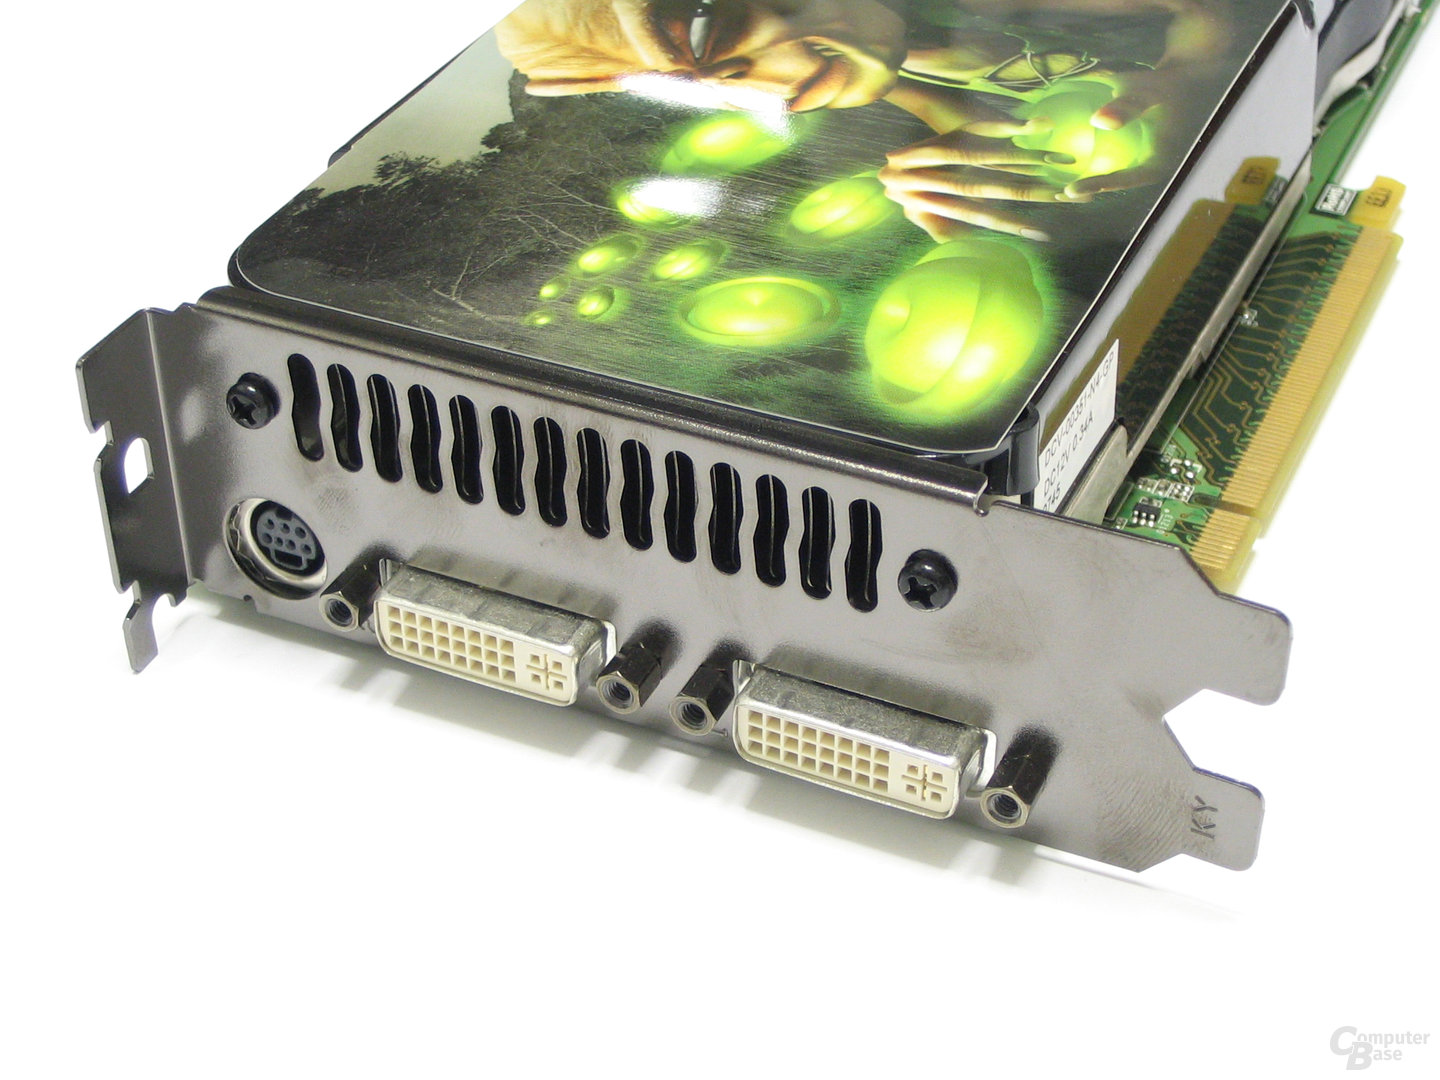 Geforce 8800 gts. 8800 GTS 512. 8800gts(g92). GEFORCE 8800 GTS AGP 8x. 8800 GTS охлаждение.